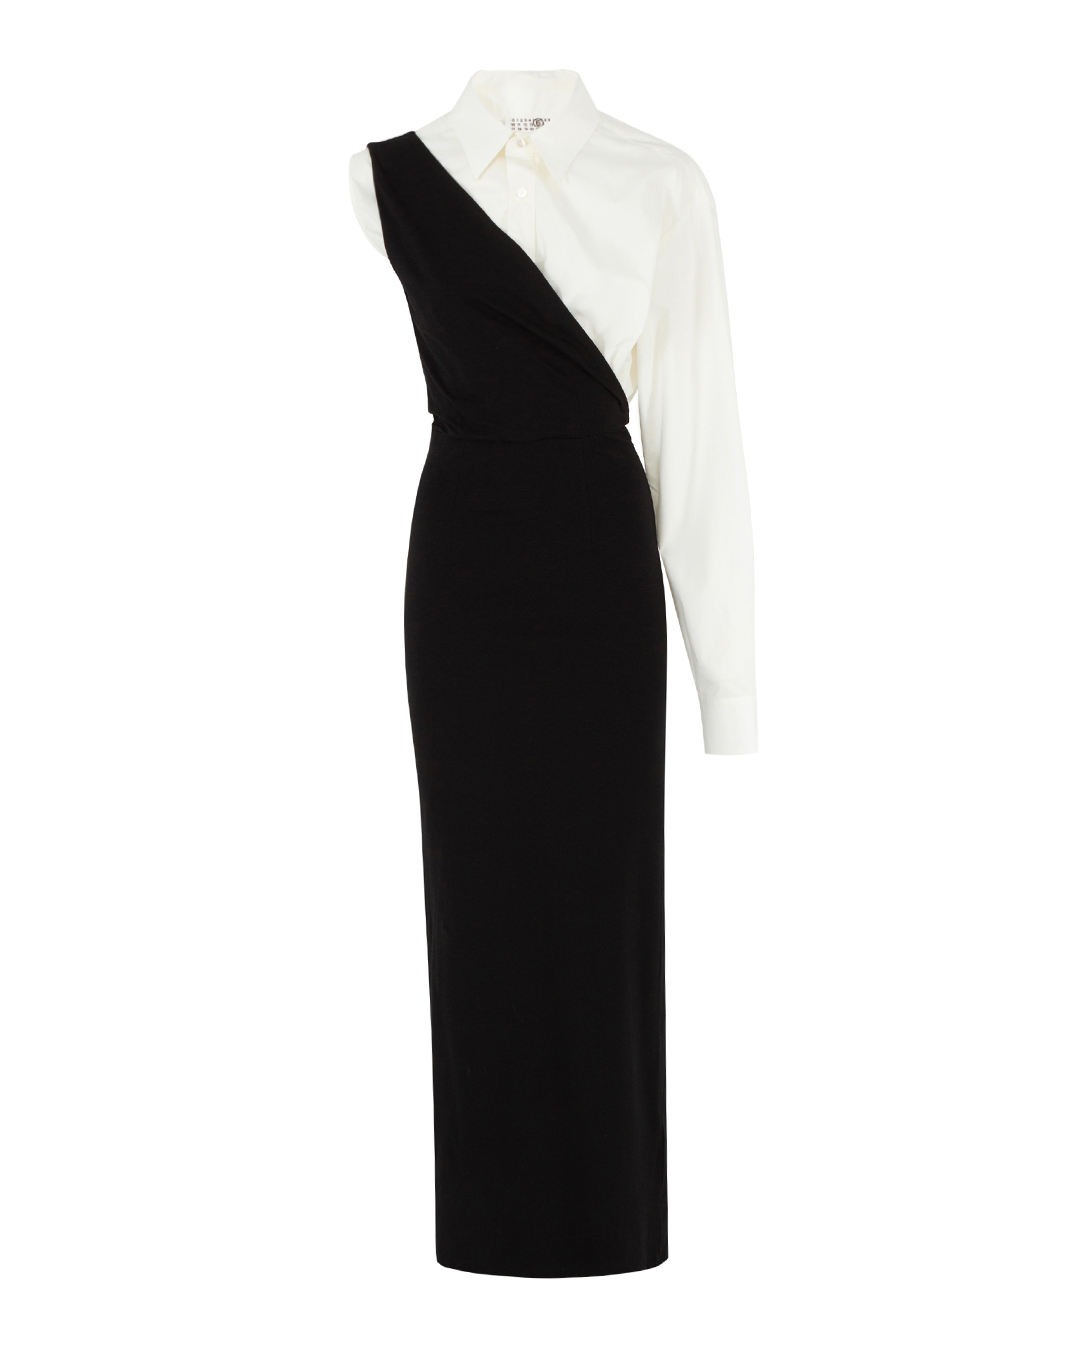 платье MM6 Maison Margiela S62DG0021 черный+белый l, размер l, цвет черный+белый S62DG0021 черный+белый l - фото 1